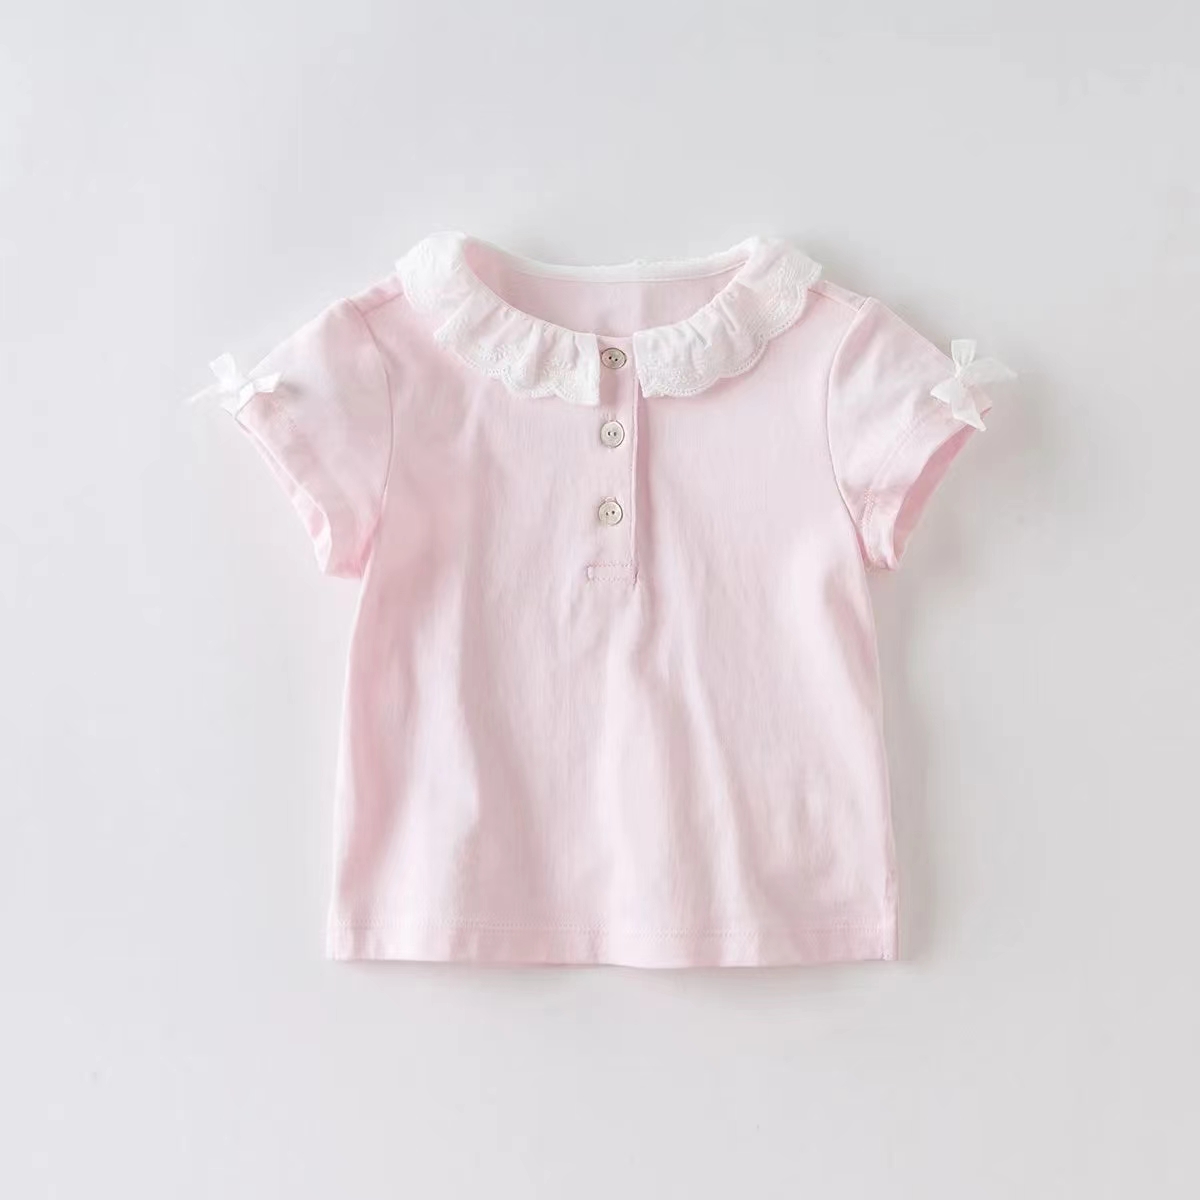 儿童t恤女童短袖夏装新款洋气可爱小童宝宝纯棉女孩上衣